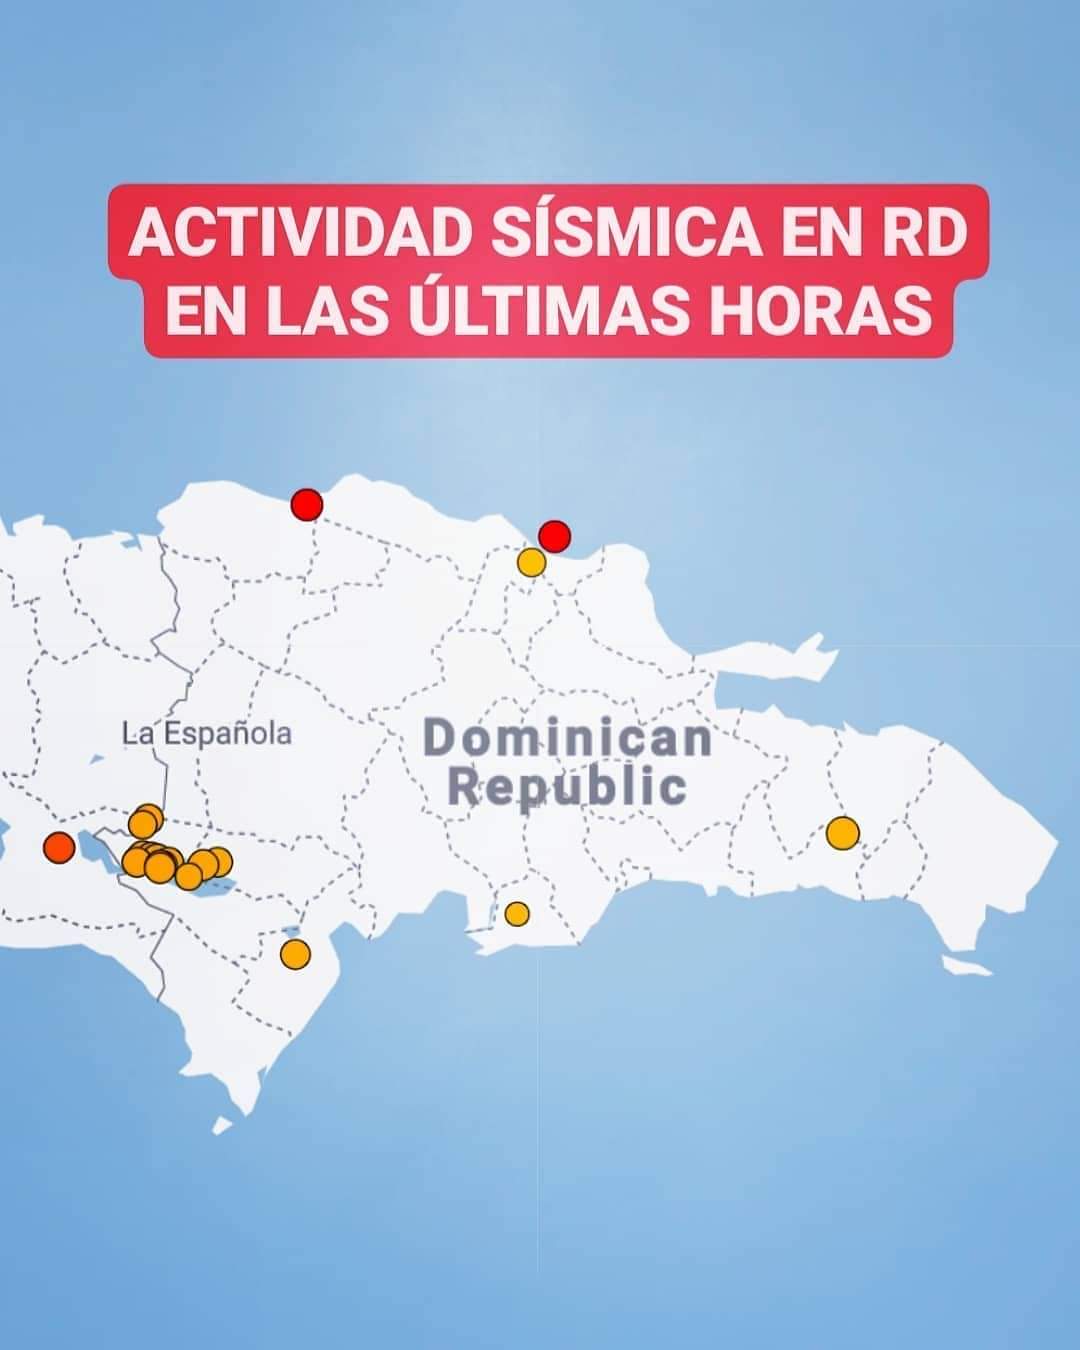 República Dominicana registra 17 temblores de tierra en las últimas horas